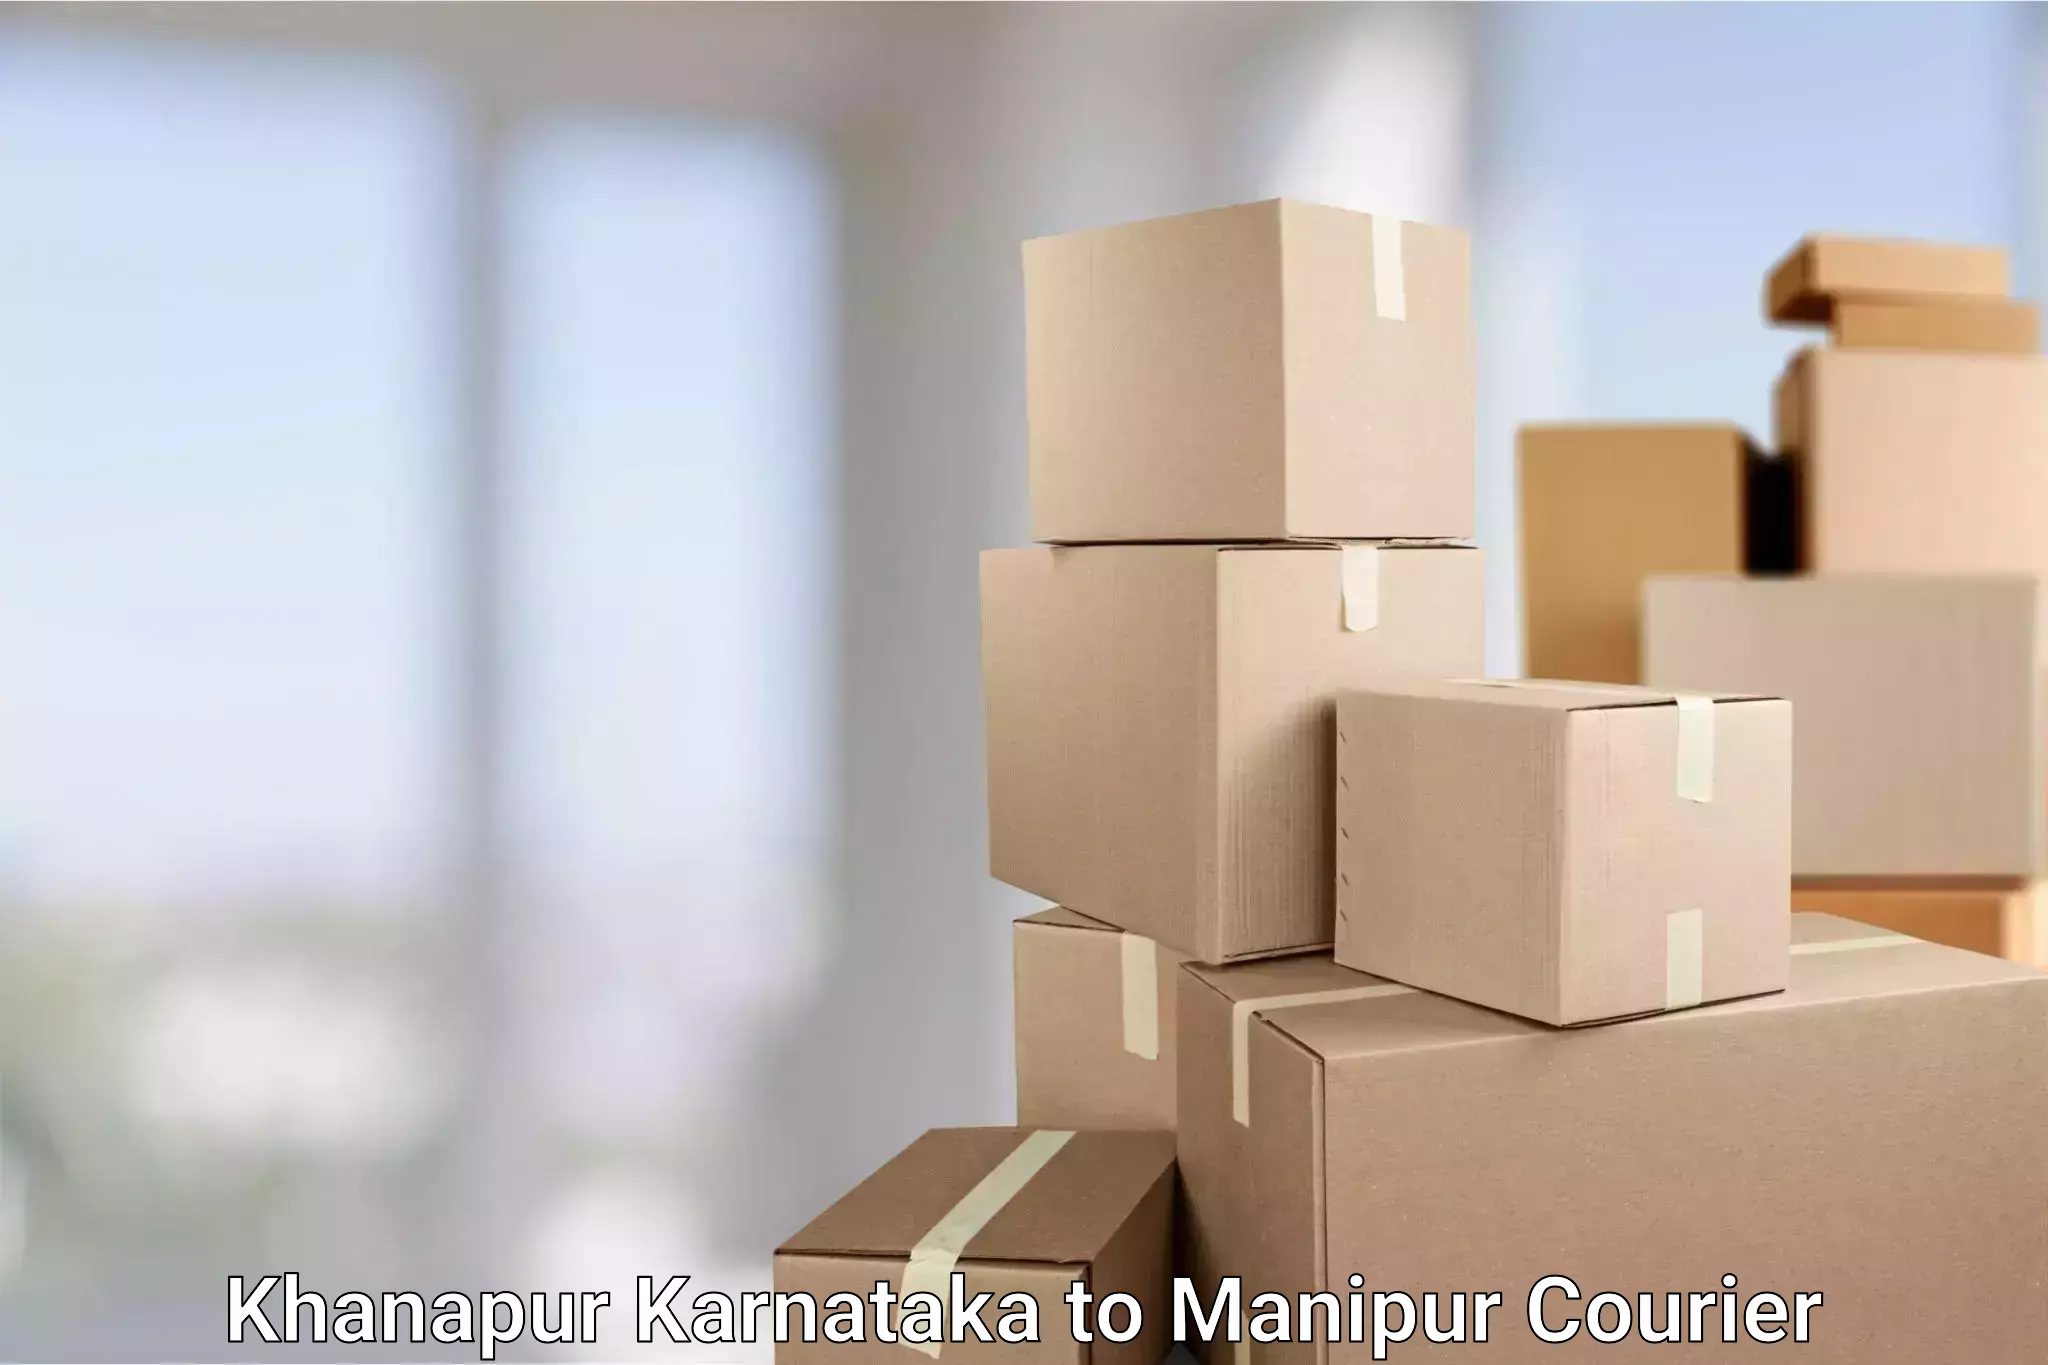 Efficient cargo handling Khanapur Karnataka to Manipur